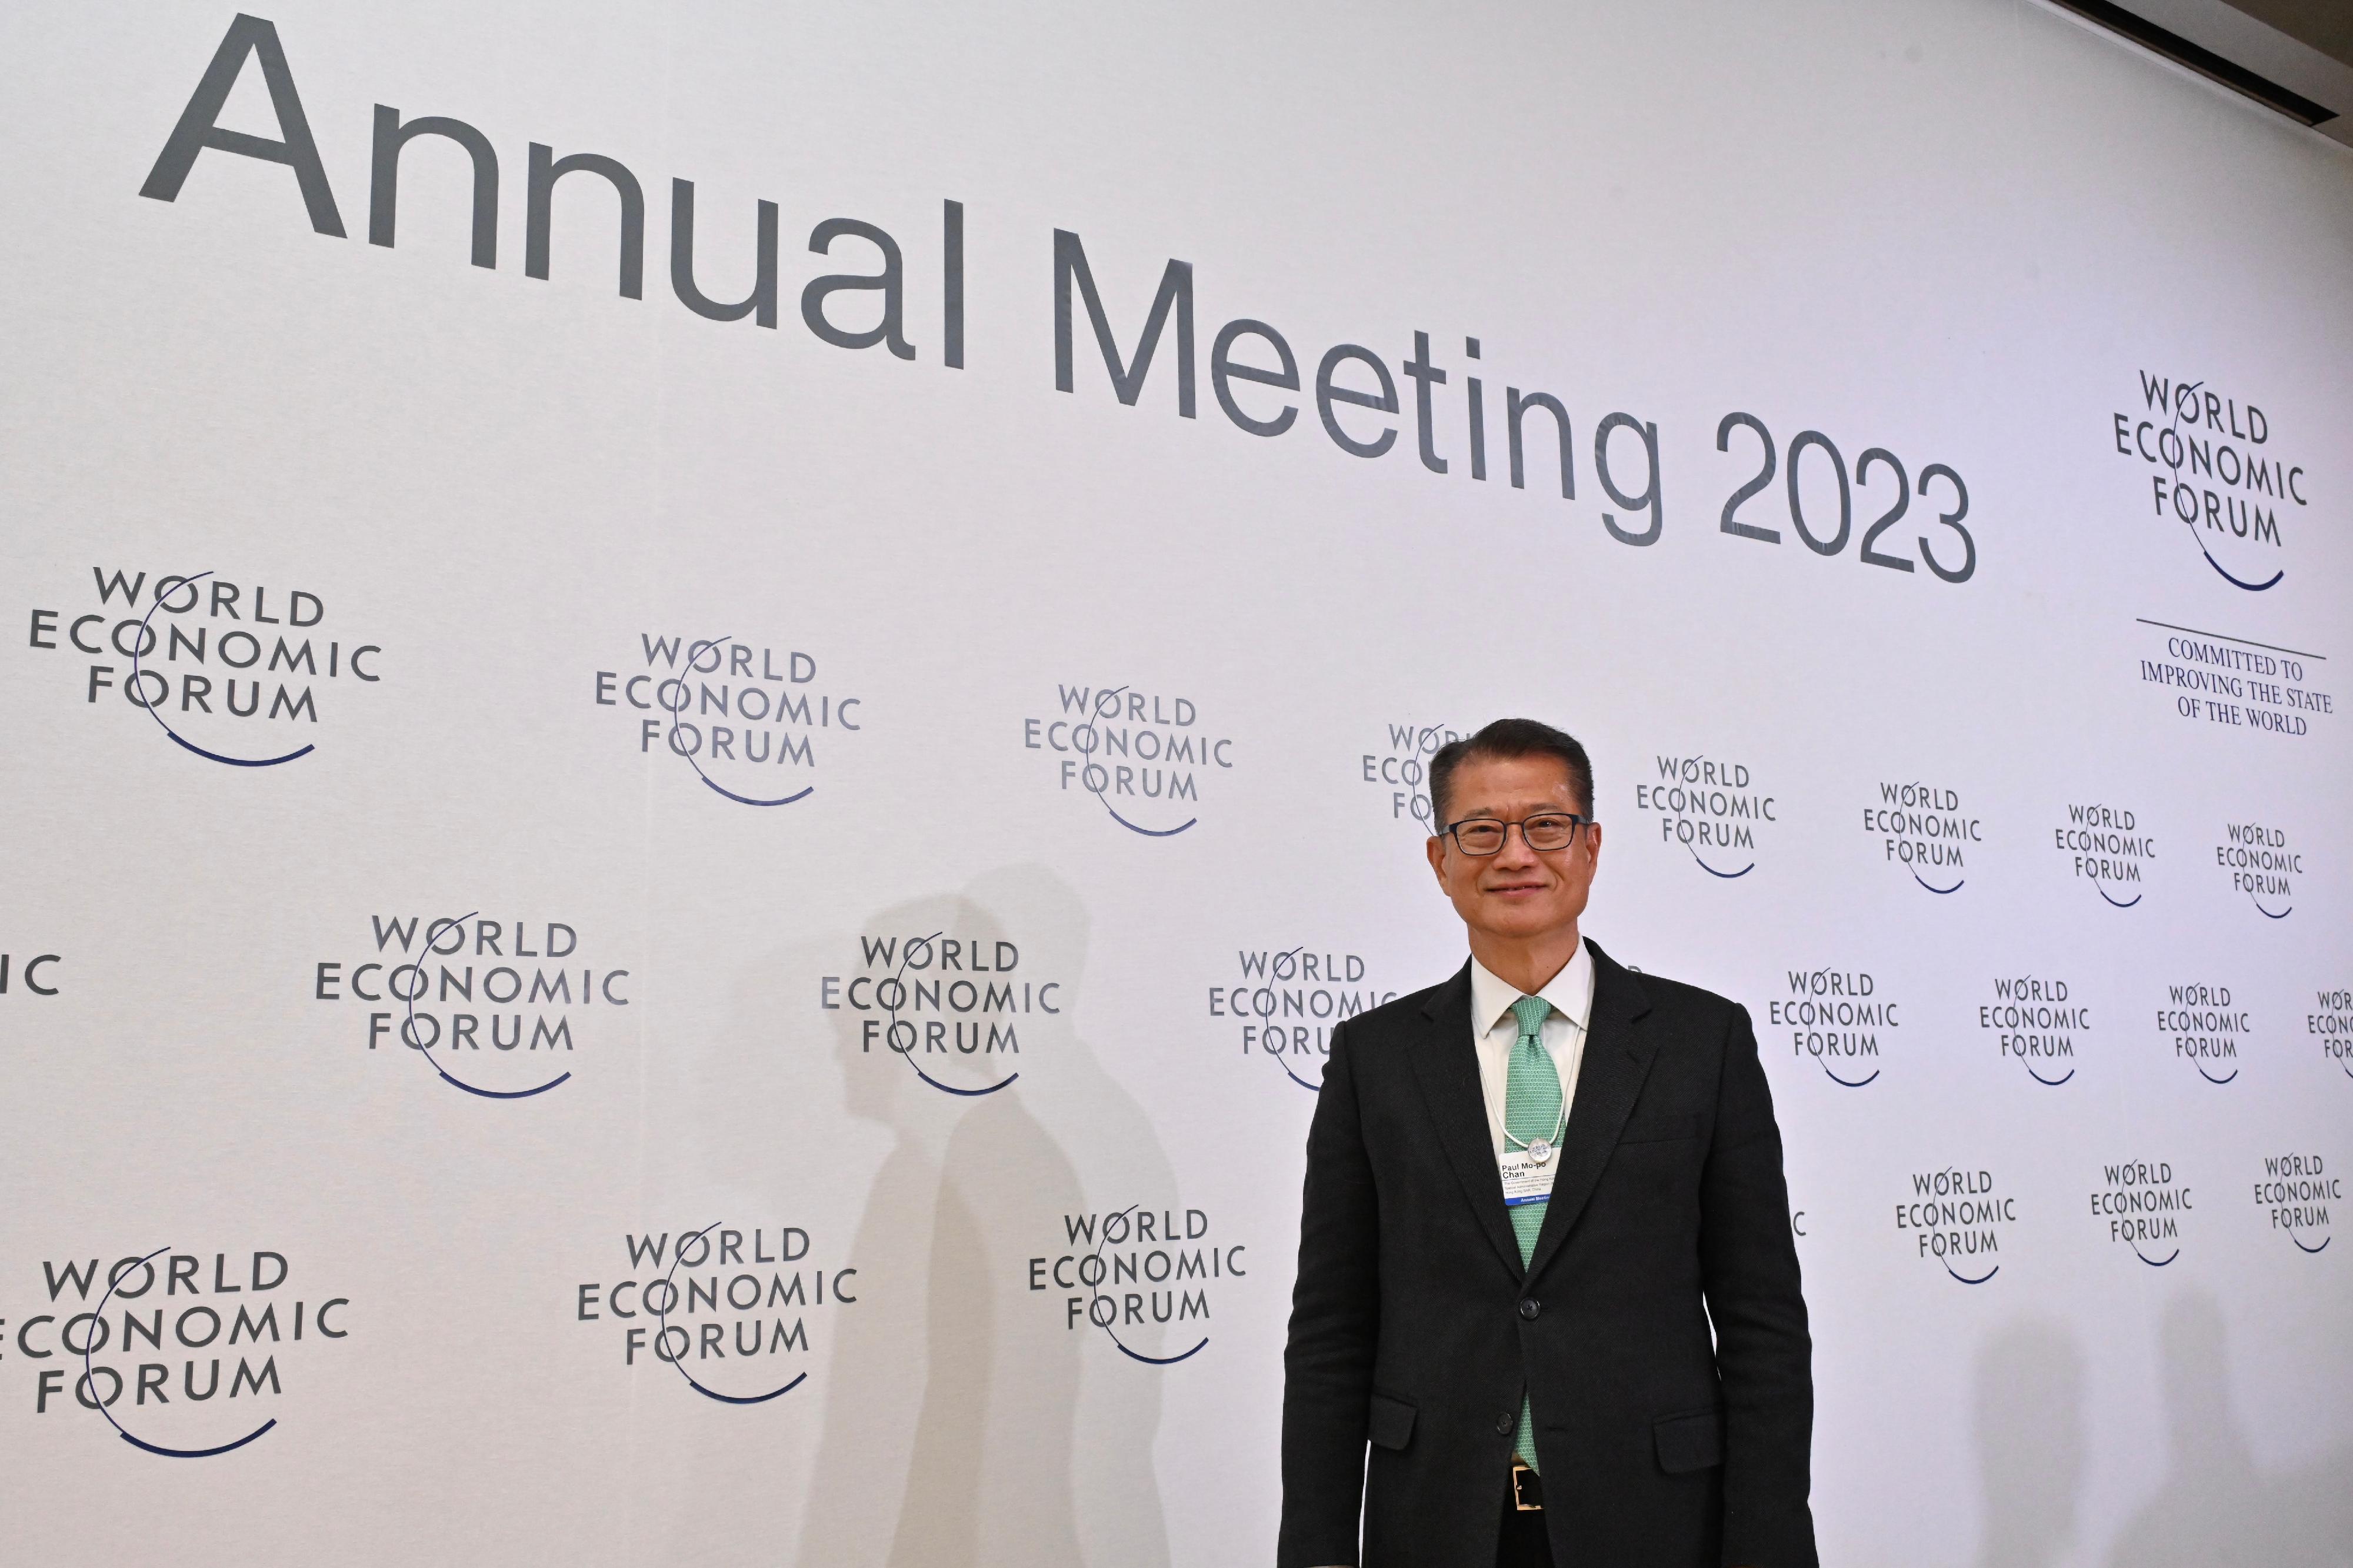 財政司司長陳茂波1月16日出席世界經濟論壇2023年會。
 
